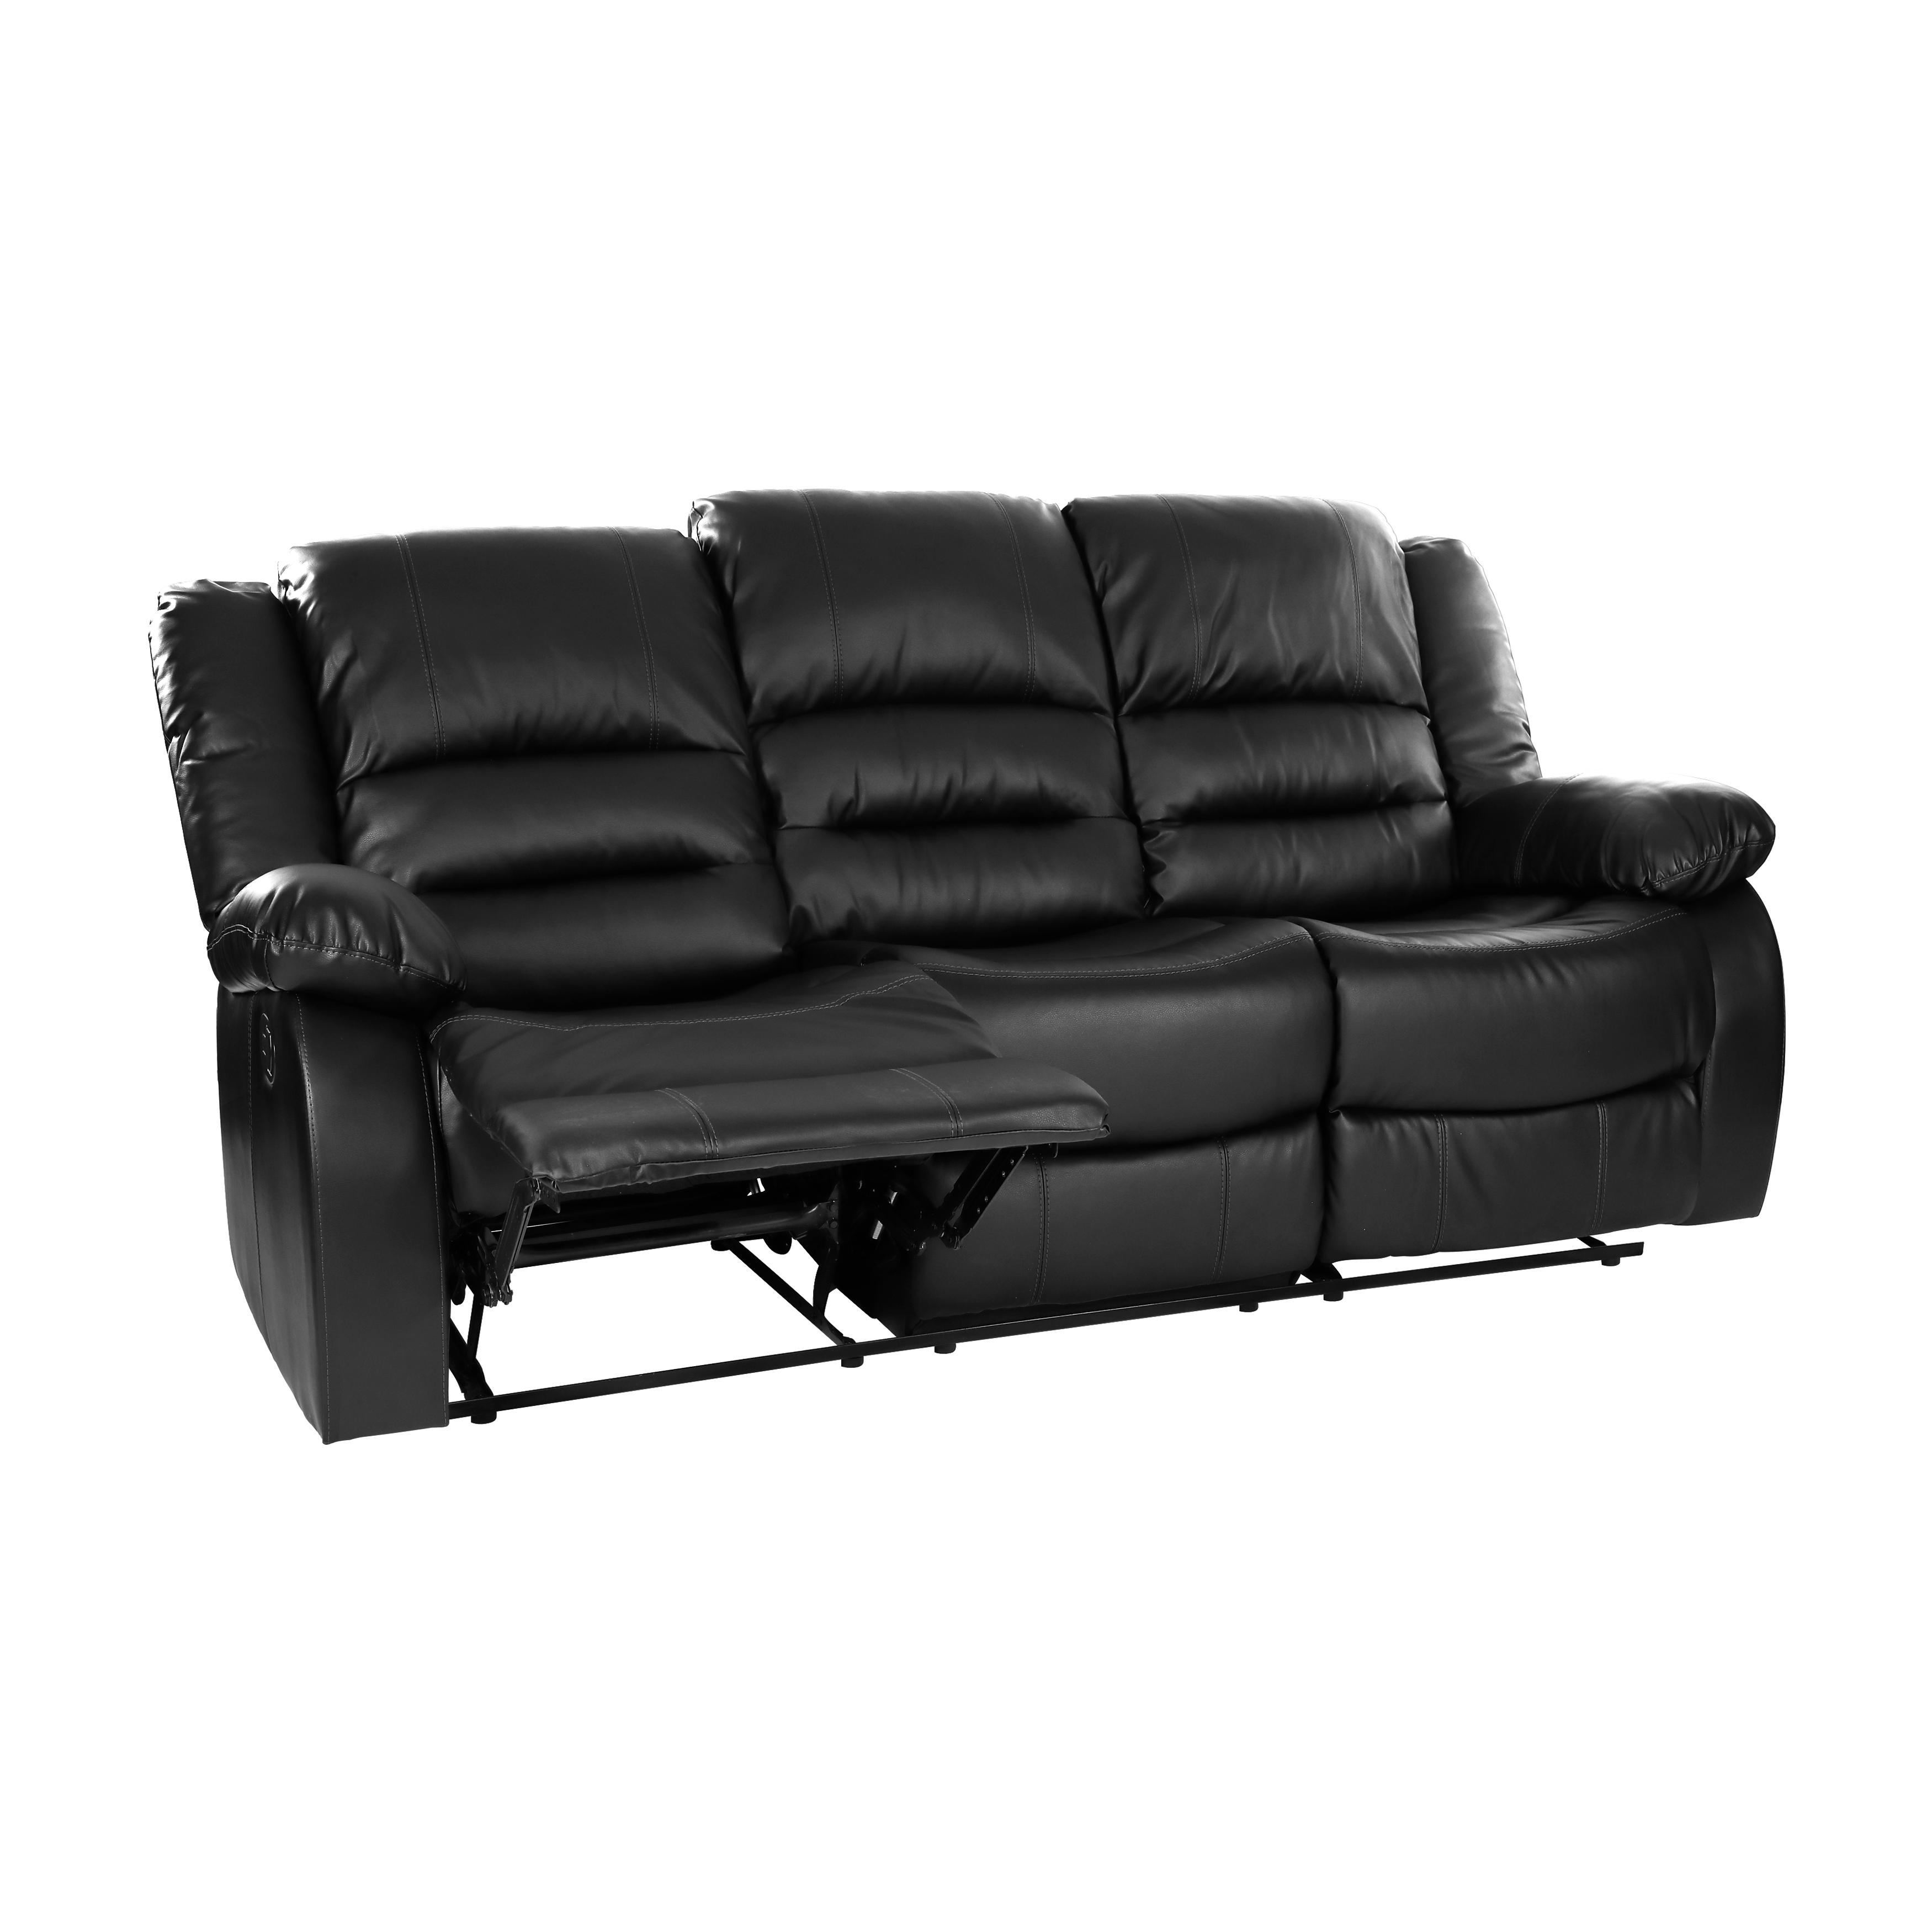 

        
Homelegance Jarita Recliner Sofa Set 3PCS 8329BLK-3-3PCS Recliner Sofa Set Black Faux Leather 56421656526689
